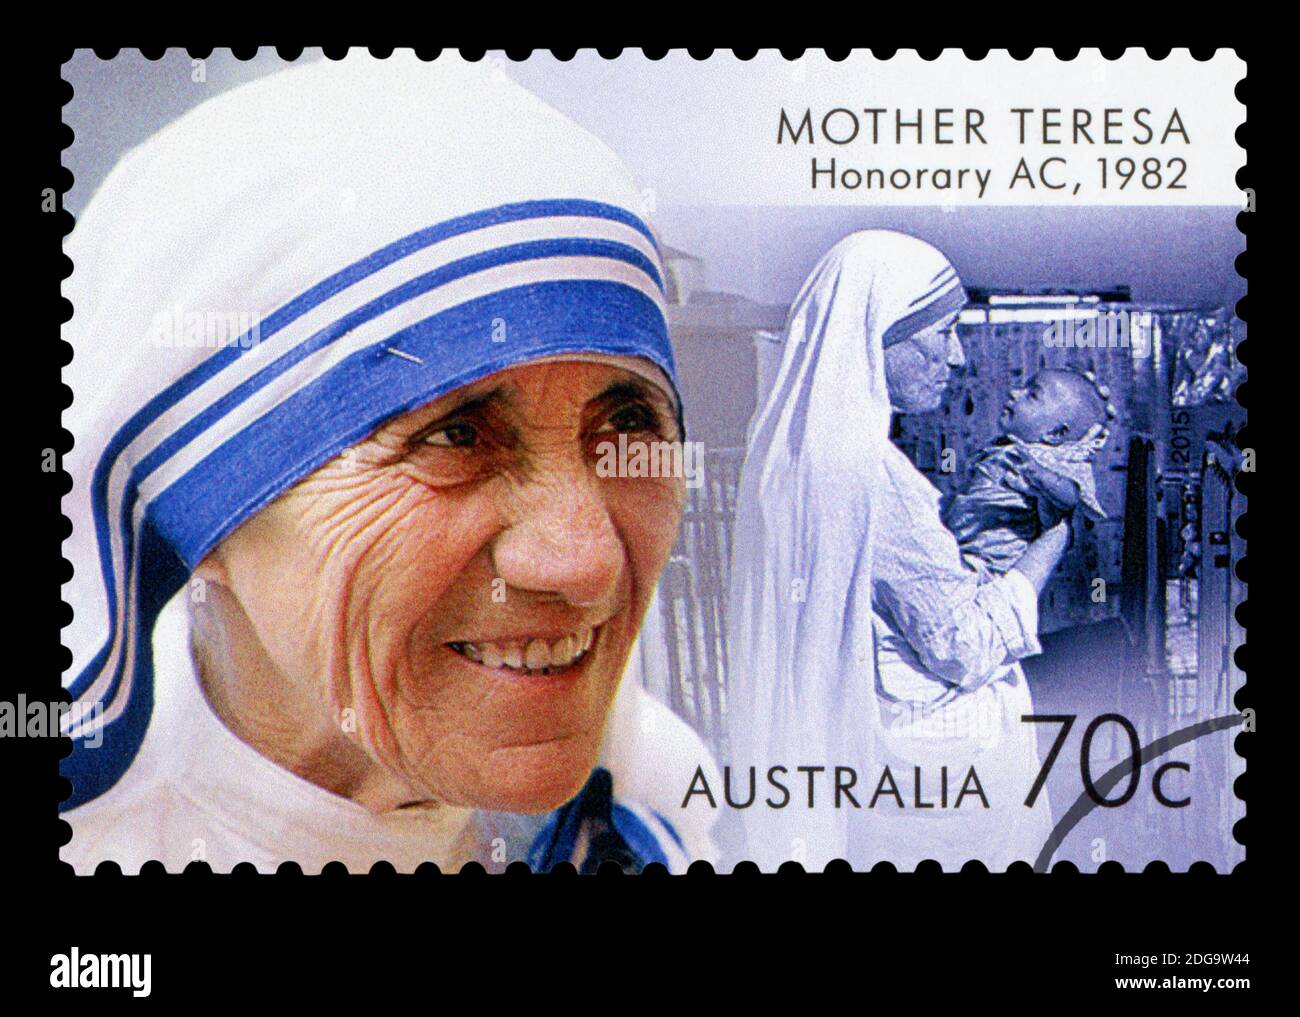 AUSTRALIEN - UM 2015: Eine in Australien gedruckte Briefmarke mit einem Bild der Friedensnobelpreisträgerin Mutter Teresa, um 2015. Stockfoto